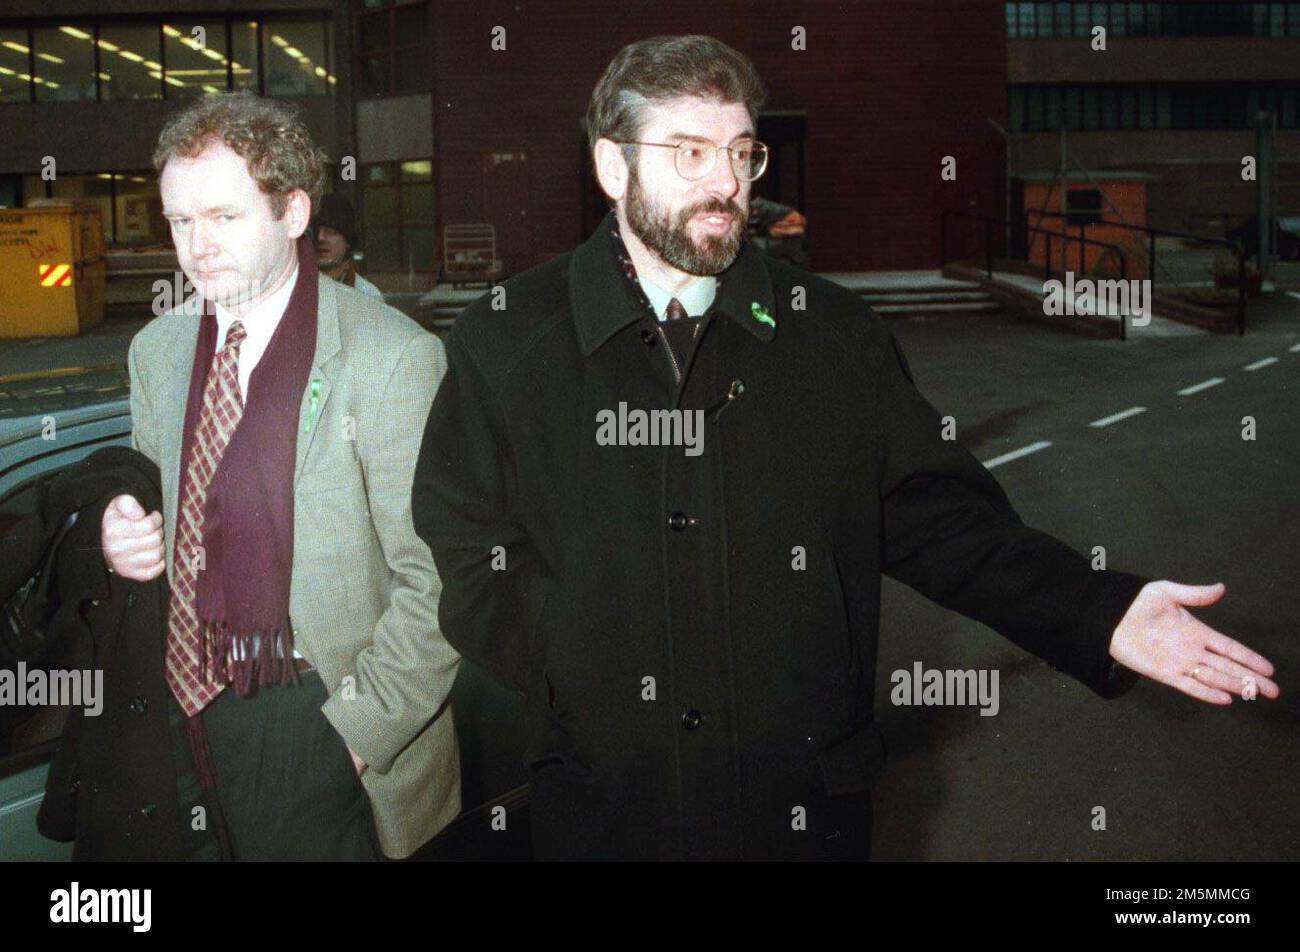 Foto del fascicolo datata 30/01/1996 dell'allora leader del Sinn Fein Gerry Adams (a destra) accompagnato da Martin McGuinness mentre lascia Stormont dopo l'incontro con il segretario dell'Irlanda del Nord Sir Patrick Mayhew a Belfast. Gli alti ministri britannici erano riluttanti ad accettare che McGuinness fosse 'veramente' impegnata nel processo di pace in Irlanda del Nord, i file di archivio sono stati rivelati. Data di emissione: Venerdì 30 dicembre 2022. Foto Stock